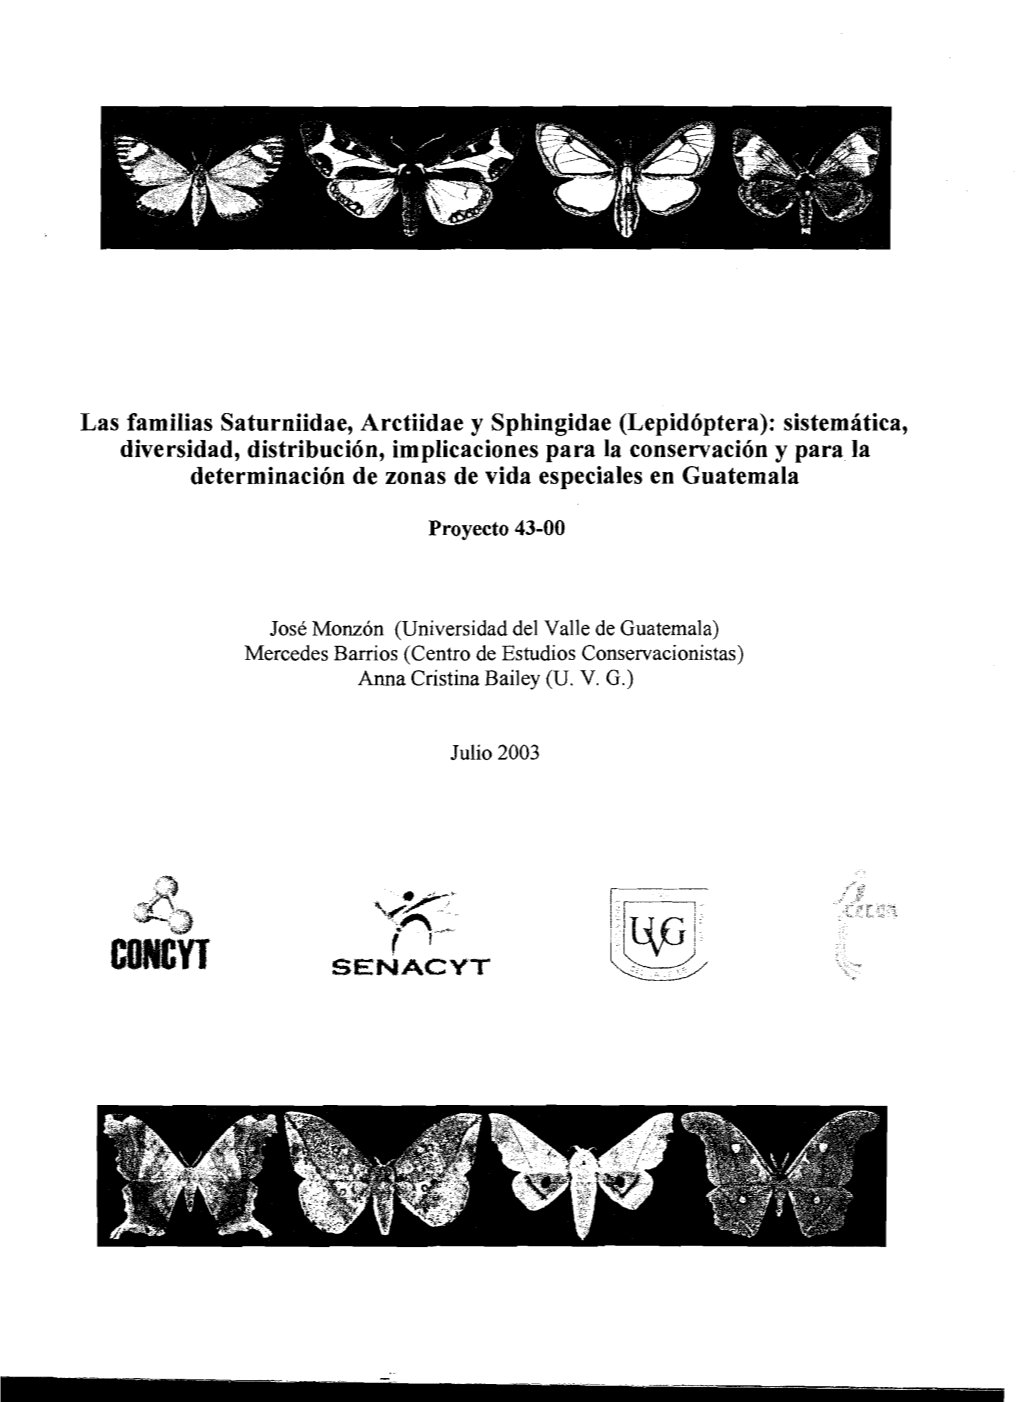 Lepidóptera): Sistemática, Diversidad, Distribución, Implicaciones Para La Conservación Y Para La Determinación De Zonas De Vida Especiales En Guatemala